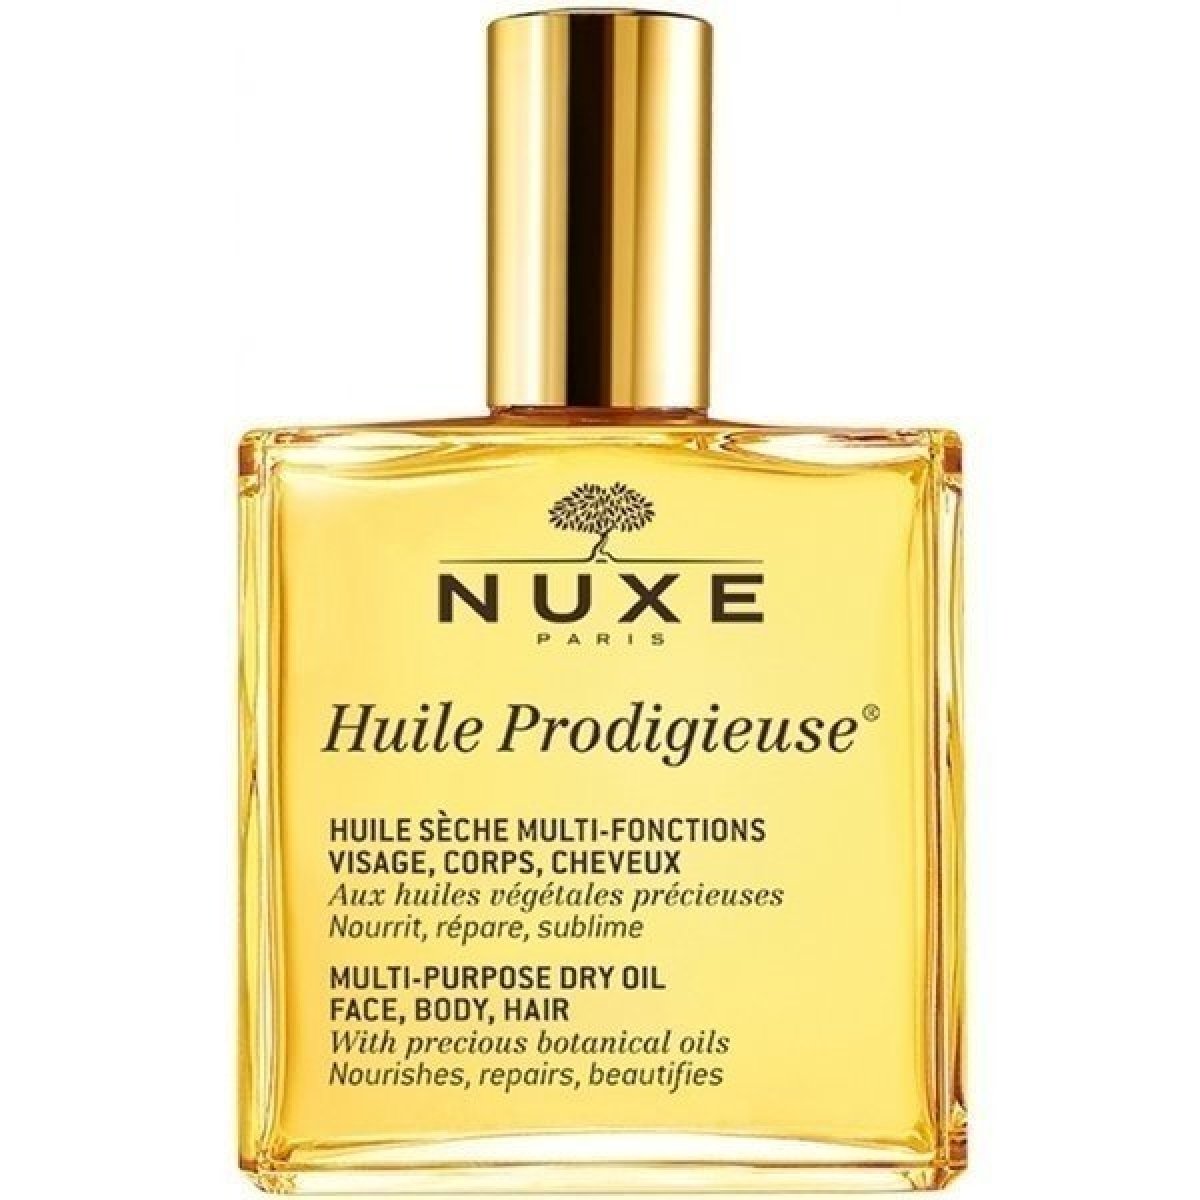 Nuxe Huile Prodigieuse multifunkční suchý olej 100 ml od 531 Kč - Heureka.cz